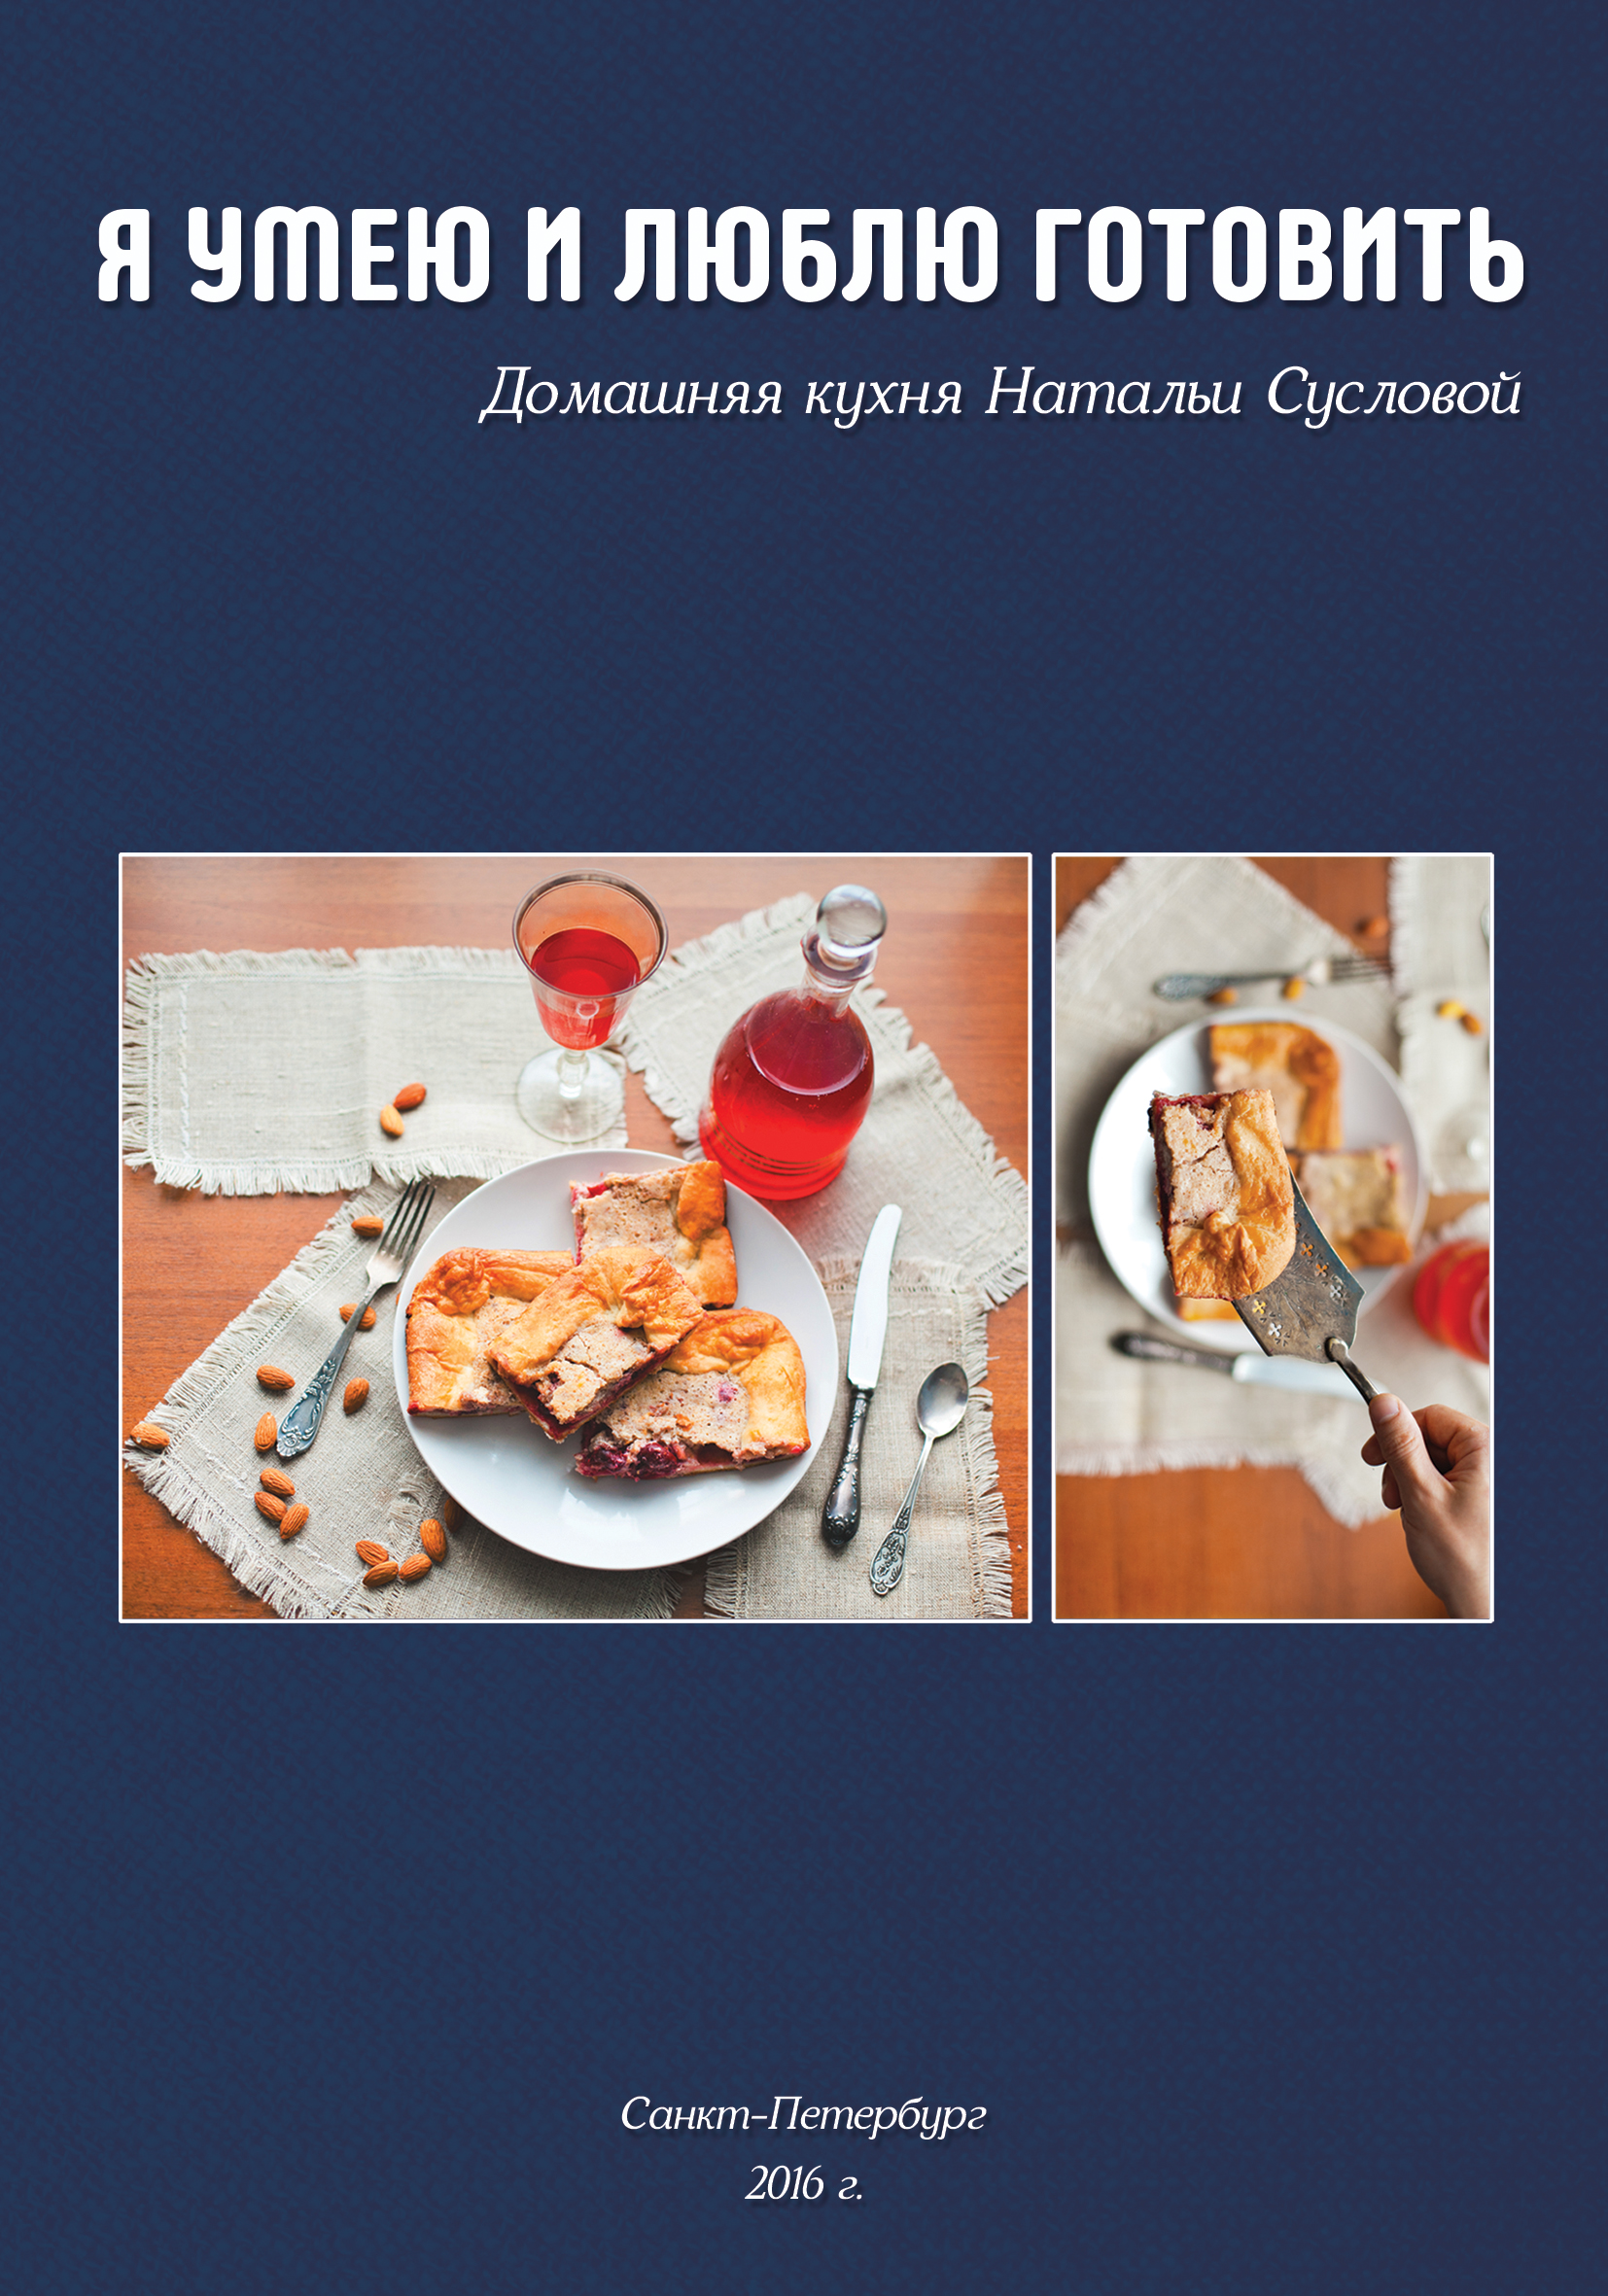 Книга Я умею и люблю готовить из серии , созданная Наталья Суслова, может относится к жанру Кулинария. Стоимость электронной книги Я умею и люблю готовить с идентификатором 21130350 составляет 69.90 руб.